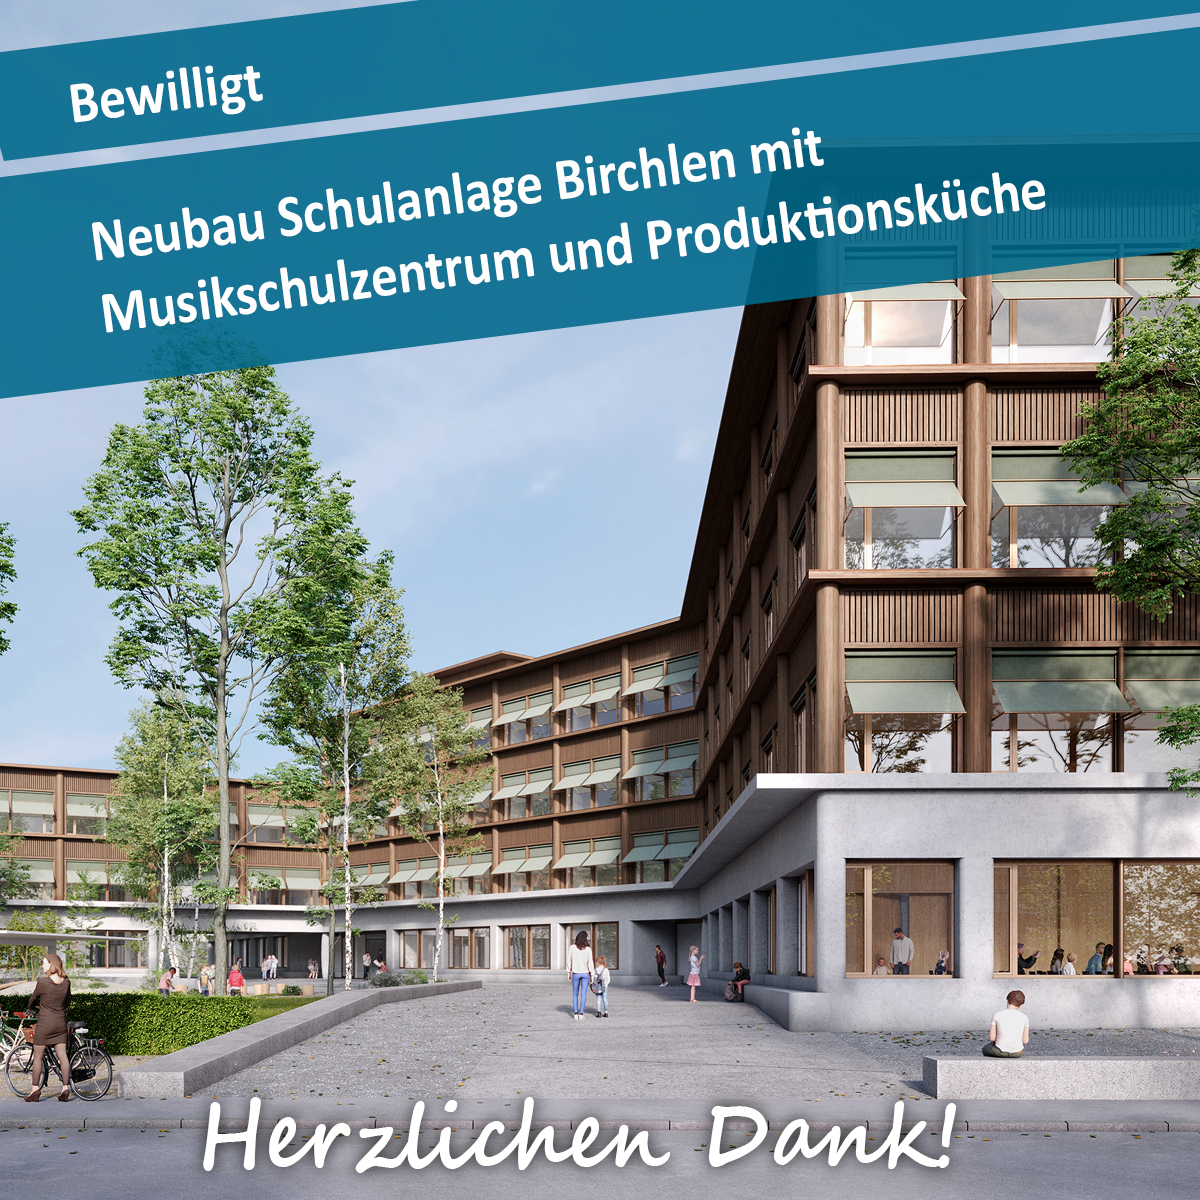 Ein weiterer Meilenstein für die Dübendorfer Schulraumplanung. Grünes Licht 🟢 für den Neubau Schulanalage Birchlen. Danke an die Dübendorferinnen und Dübendorfer 💛 für das tolle Abstimmungsergebnis mit 76.31% Ja-Stimmen!